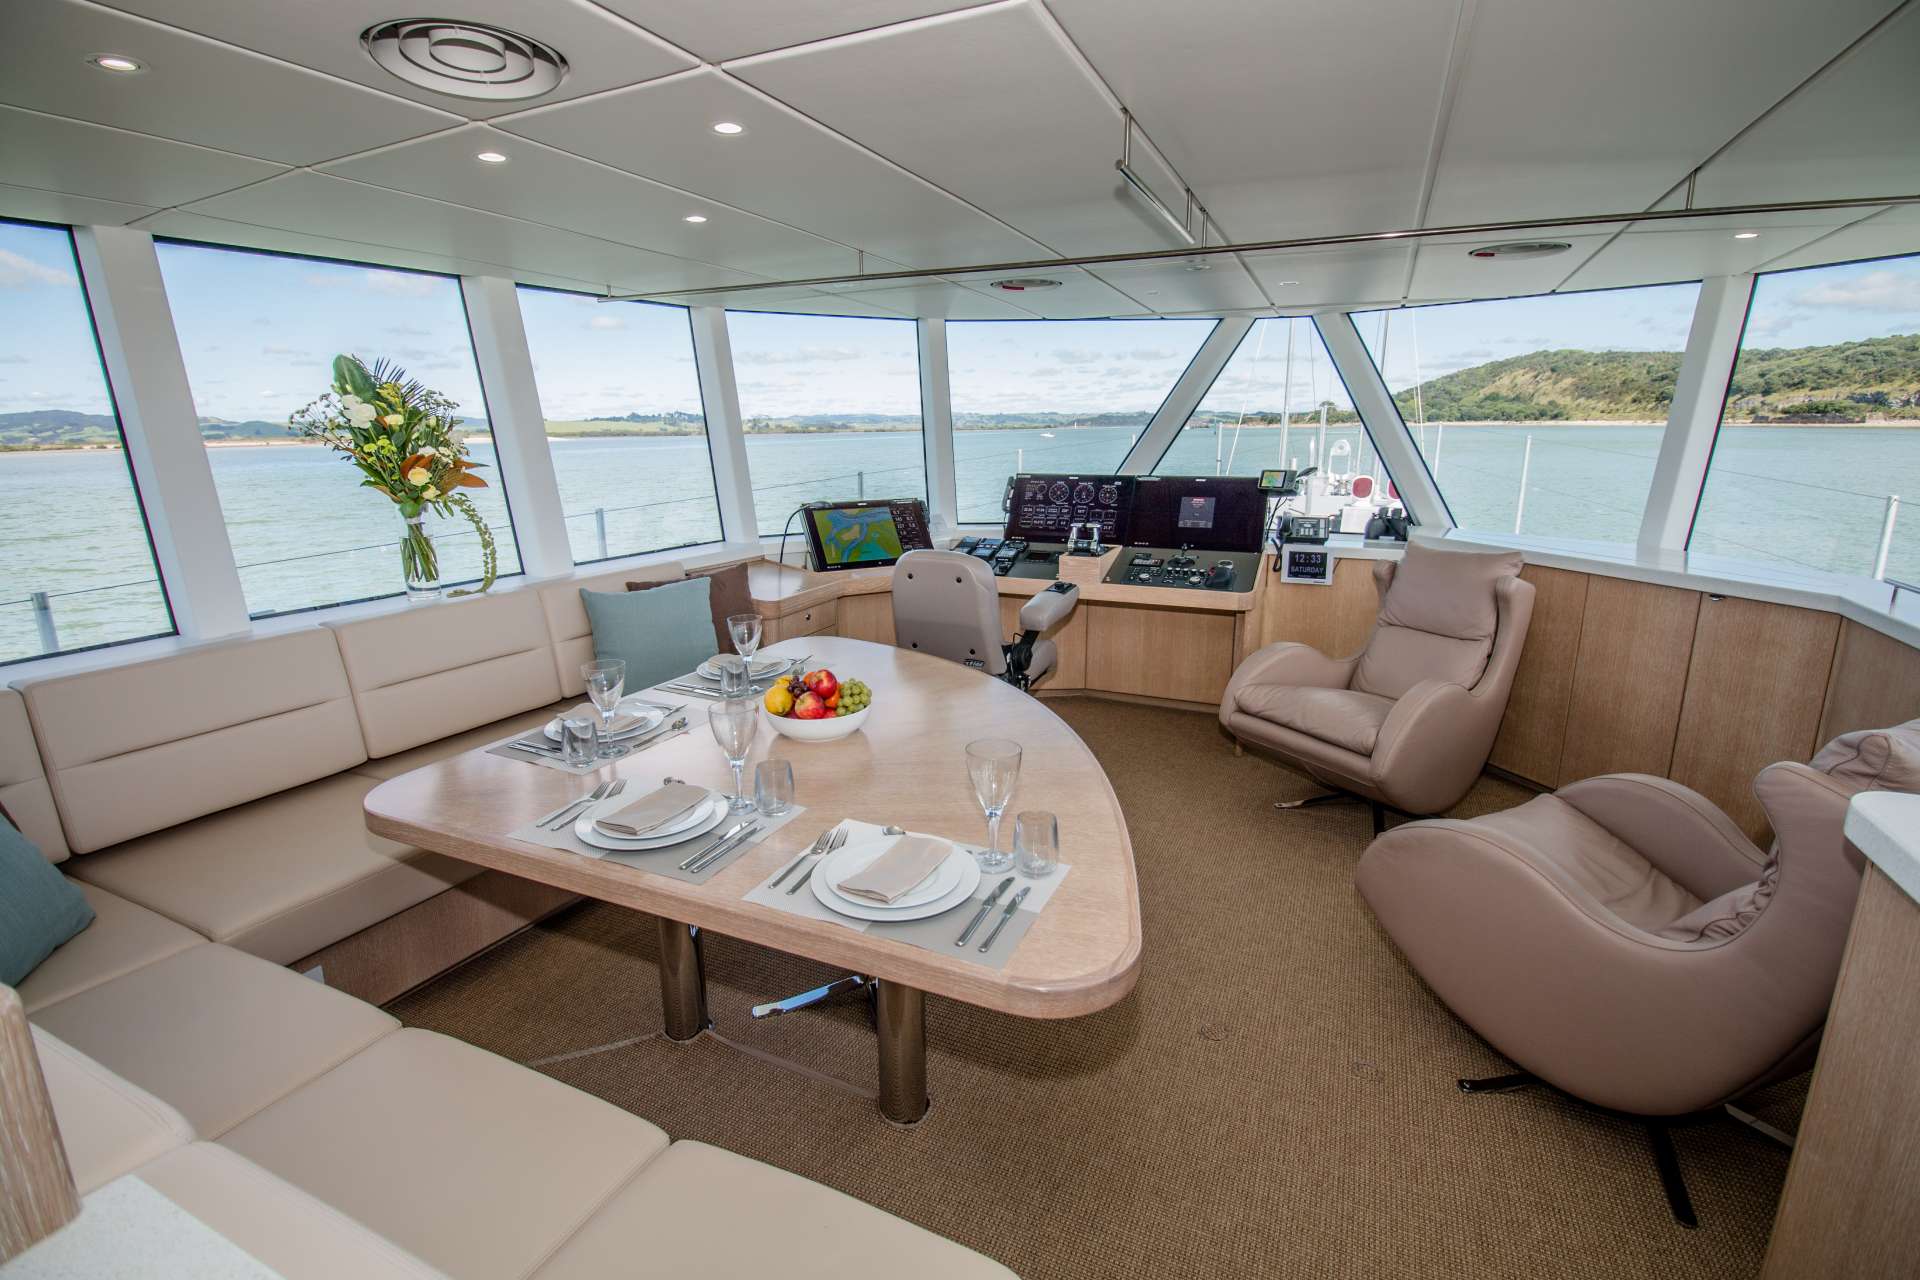 Interiors custom-designed for comfort at sea